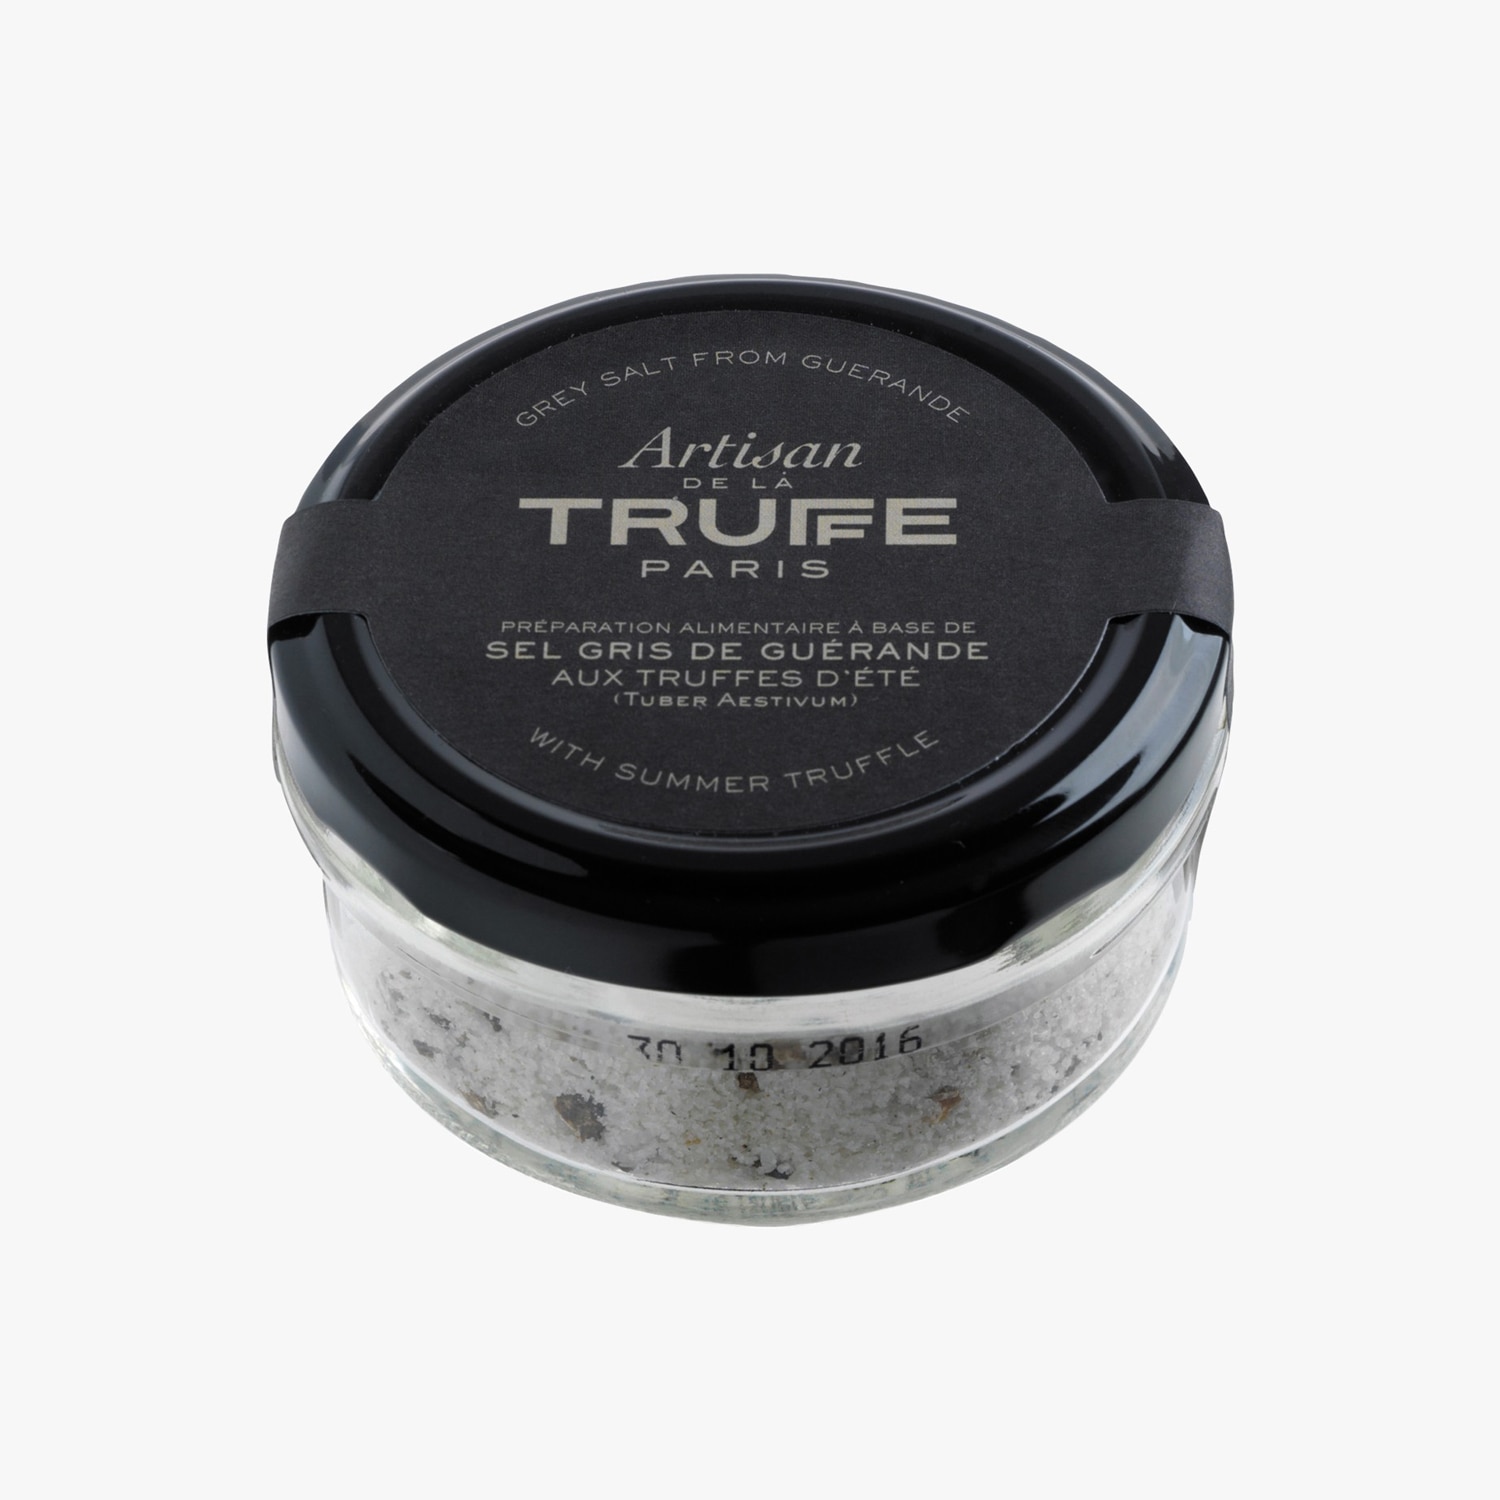 Sel de truffe 100g – LA GRANDE BOUTIQUE